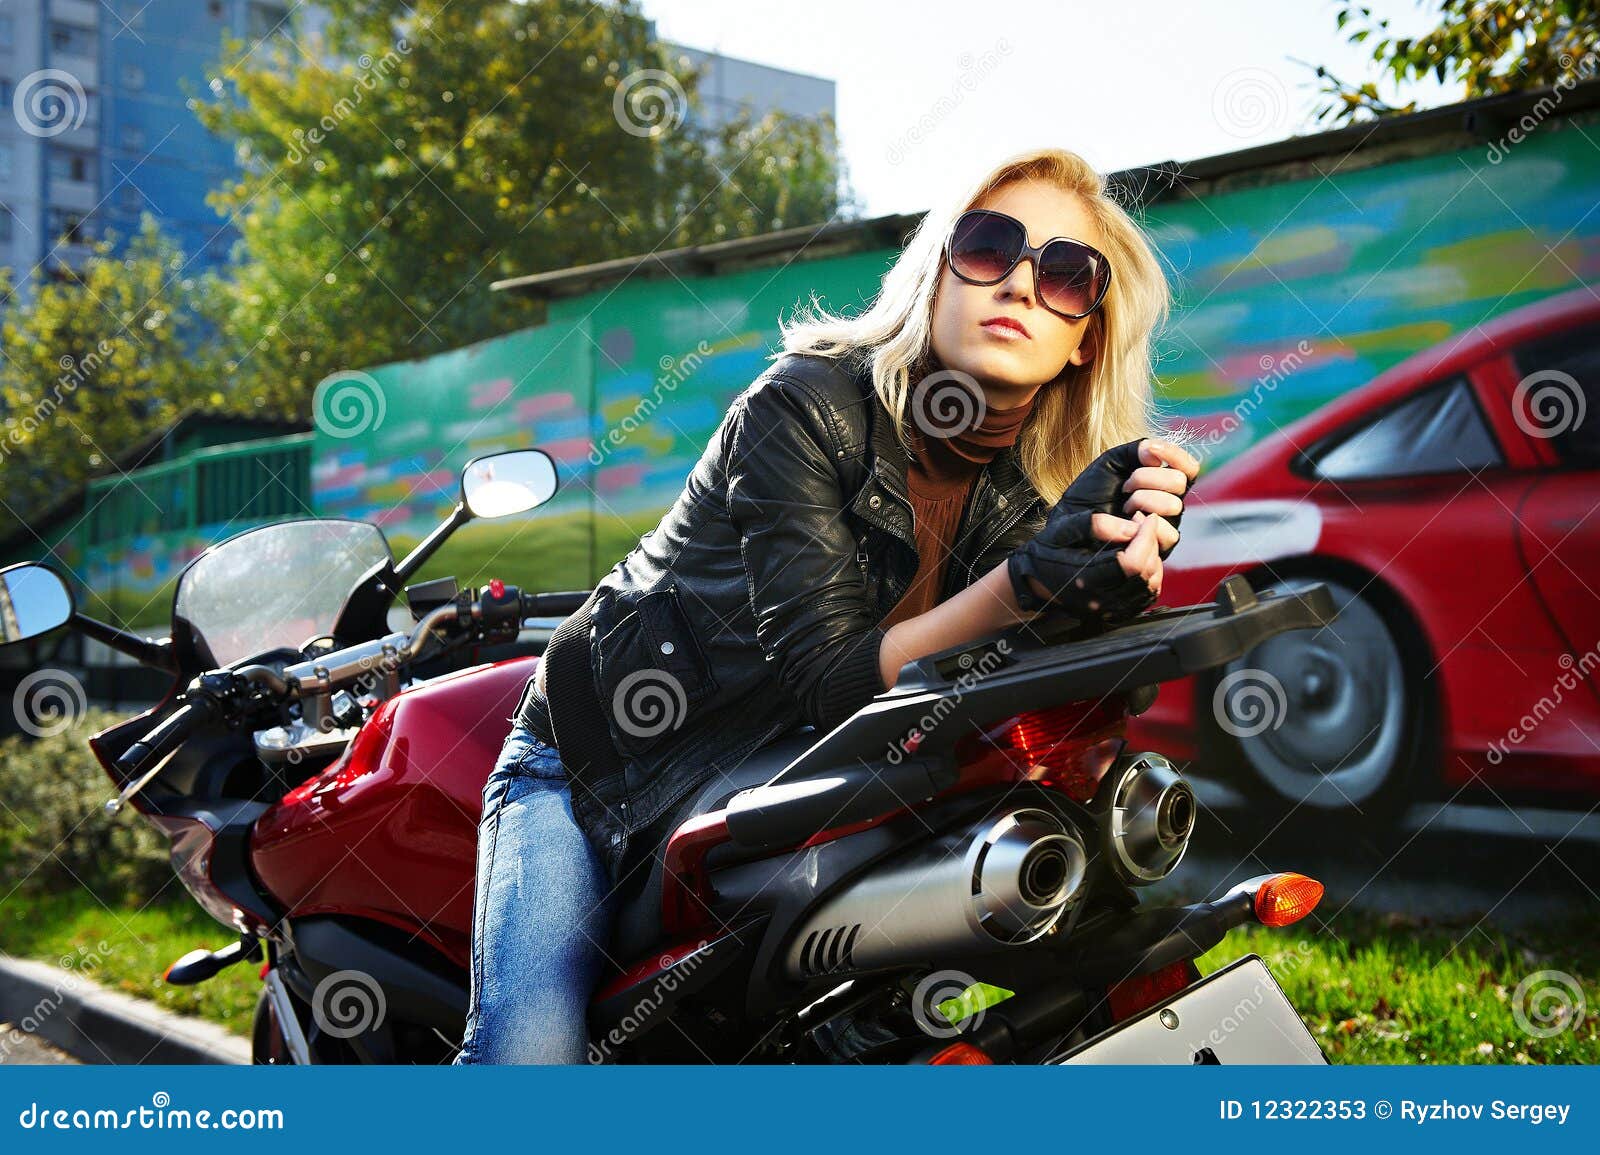  блондинка на мотоцикле
